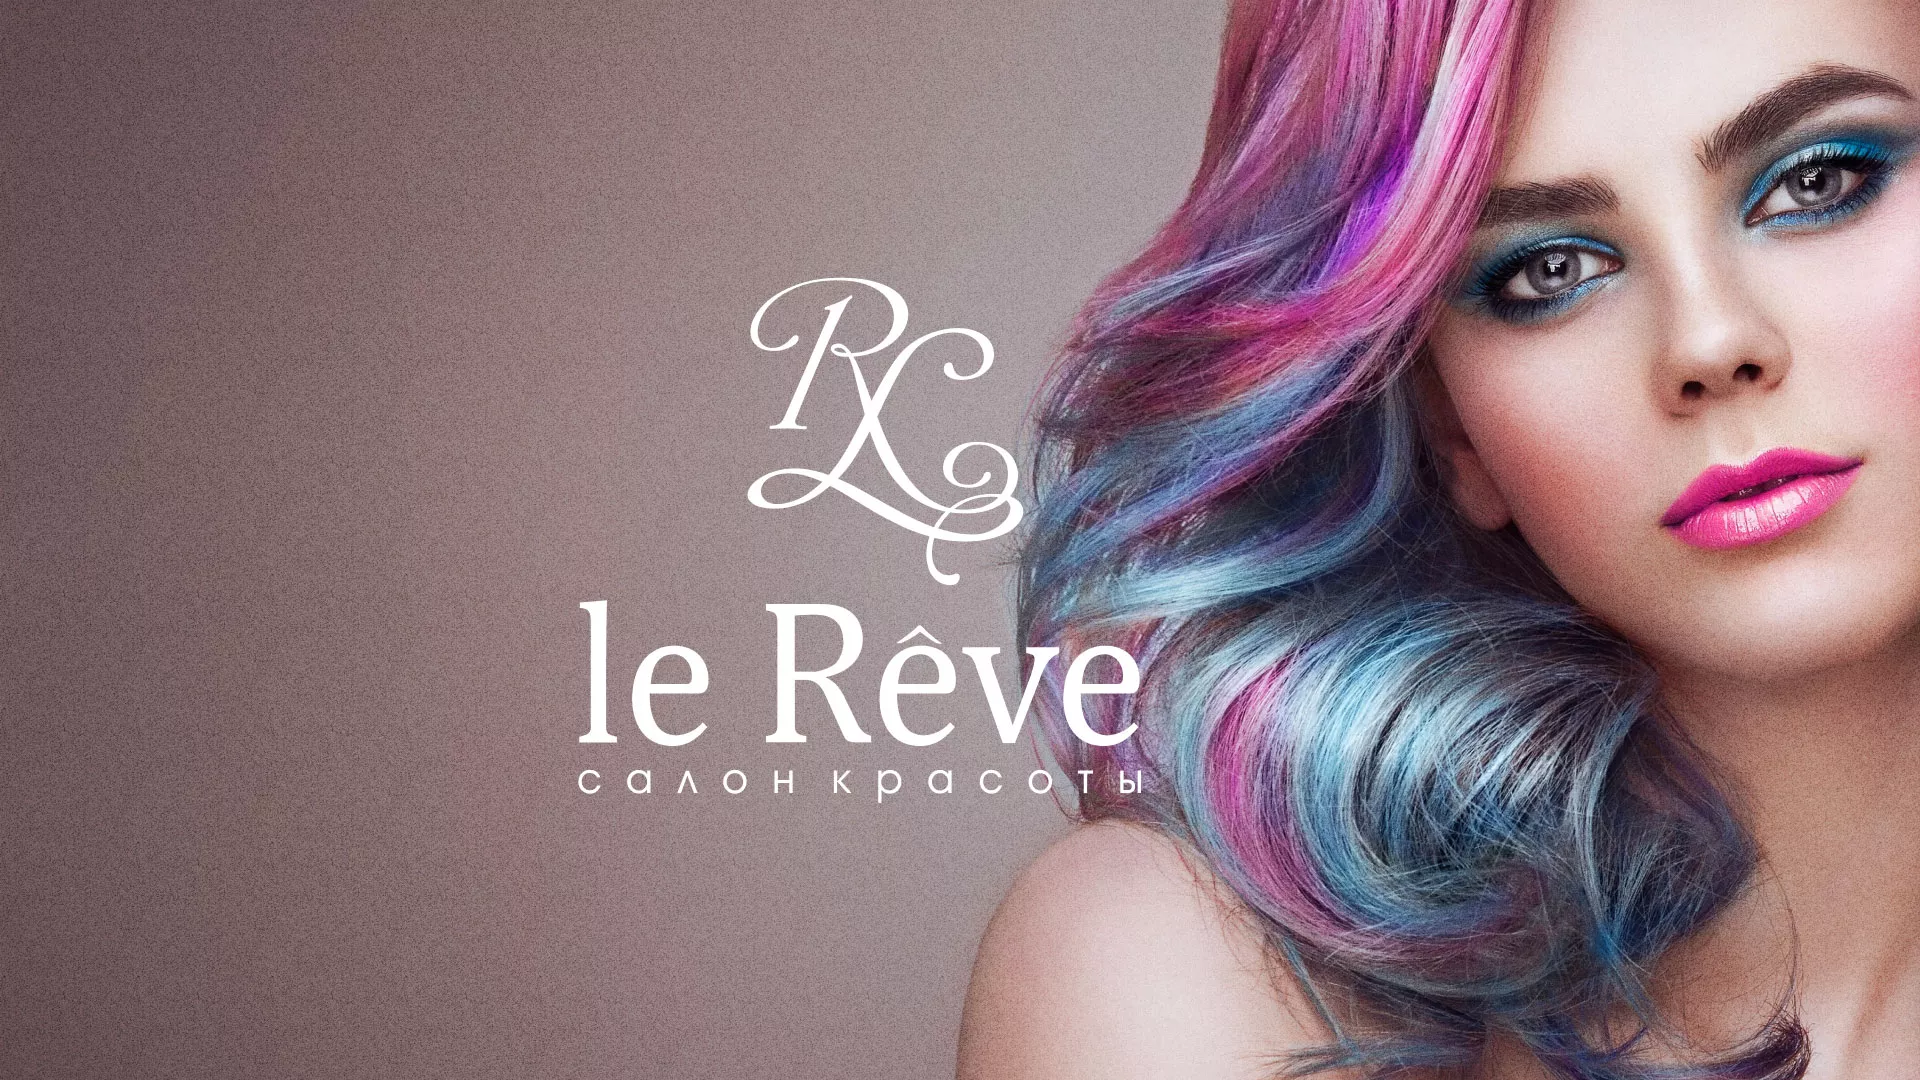 Создание сайта для салона красоты «Le Reve» в Орле